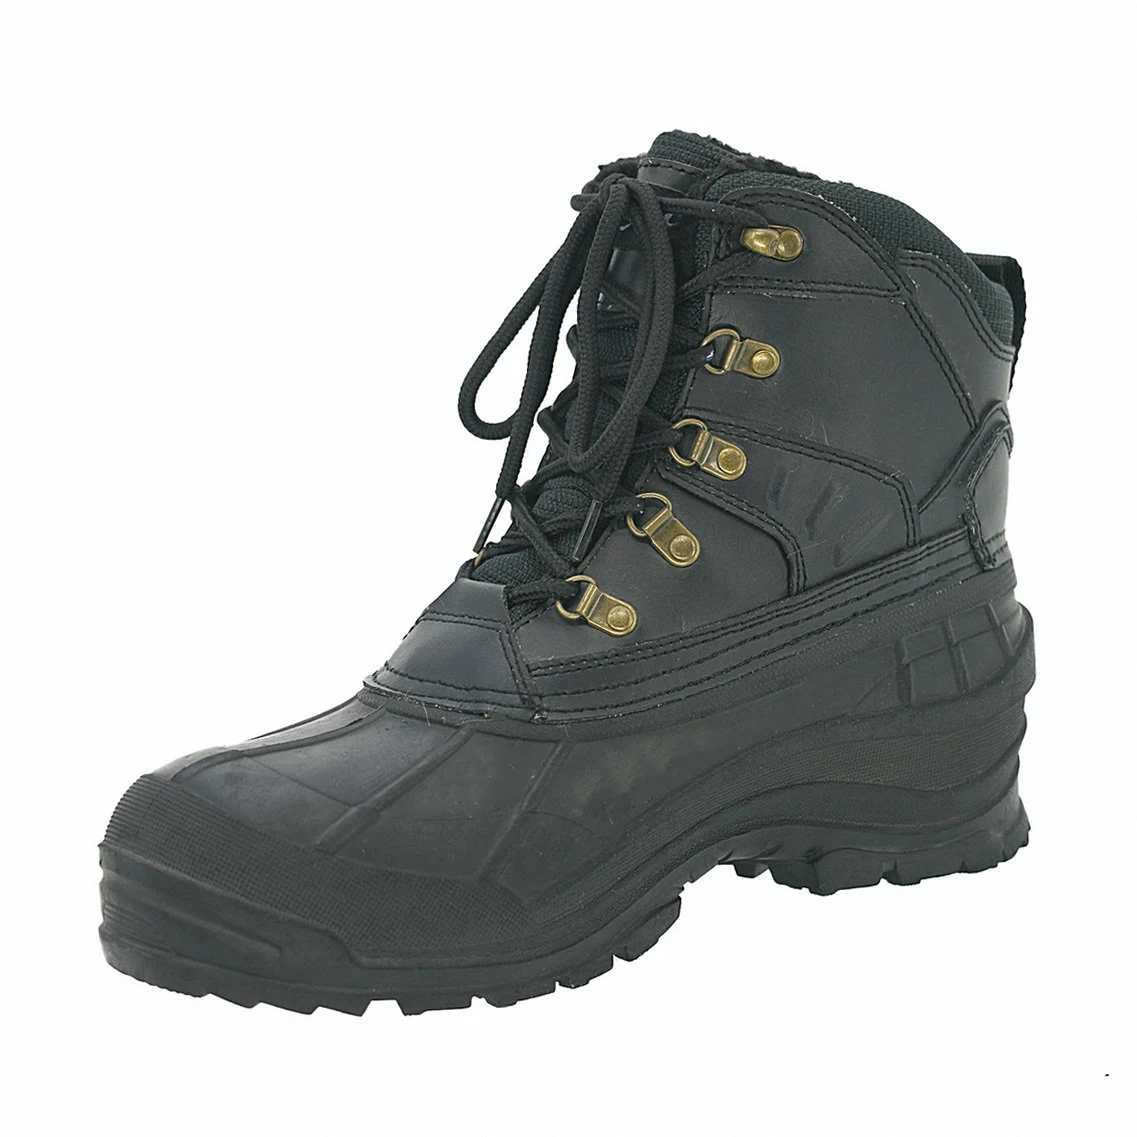 Snow Boots Botines De Mujer Waterproof Men's Brown Shoes For Men - Buy ...